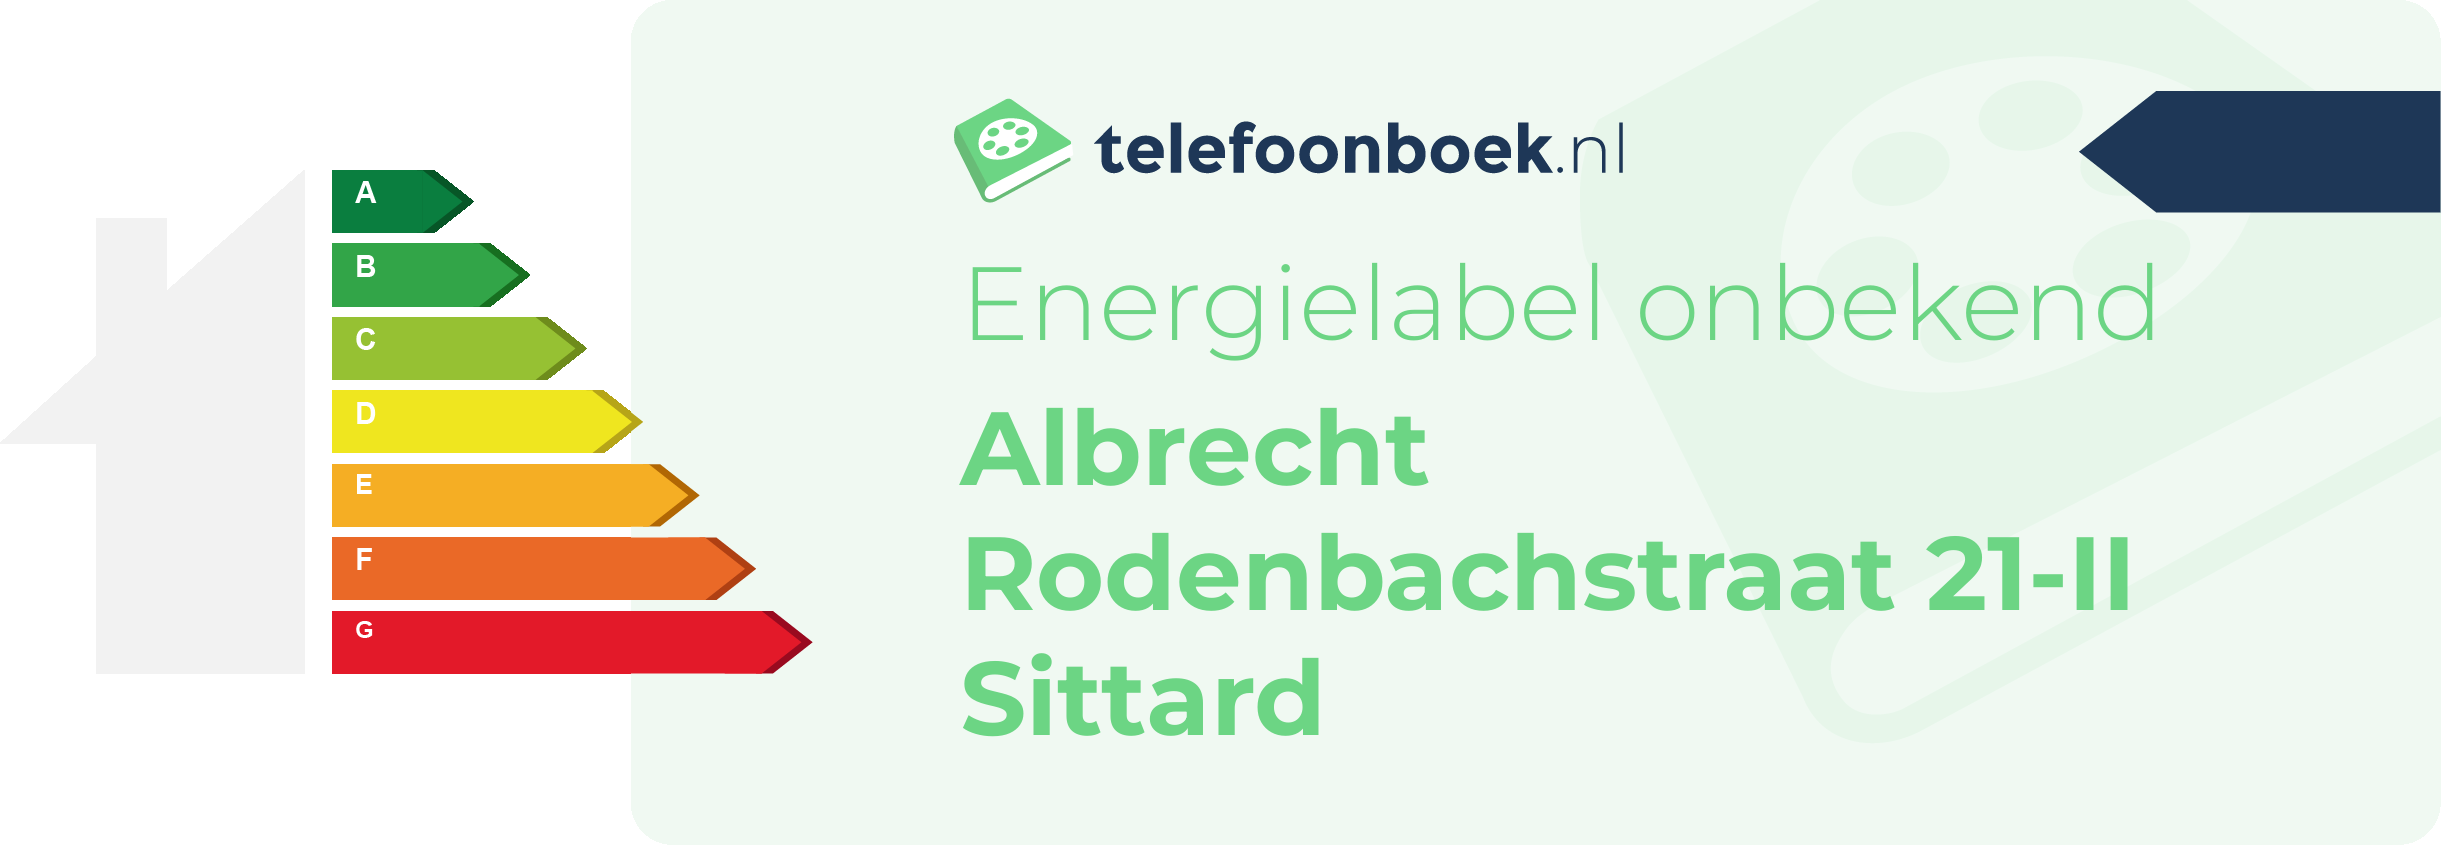 Energielabel Albrecht Rodenbachstraat 21-II Sittard